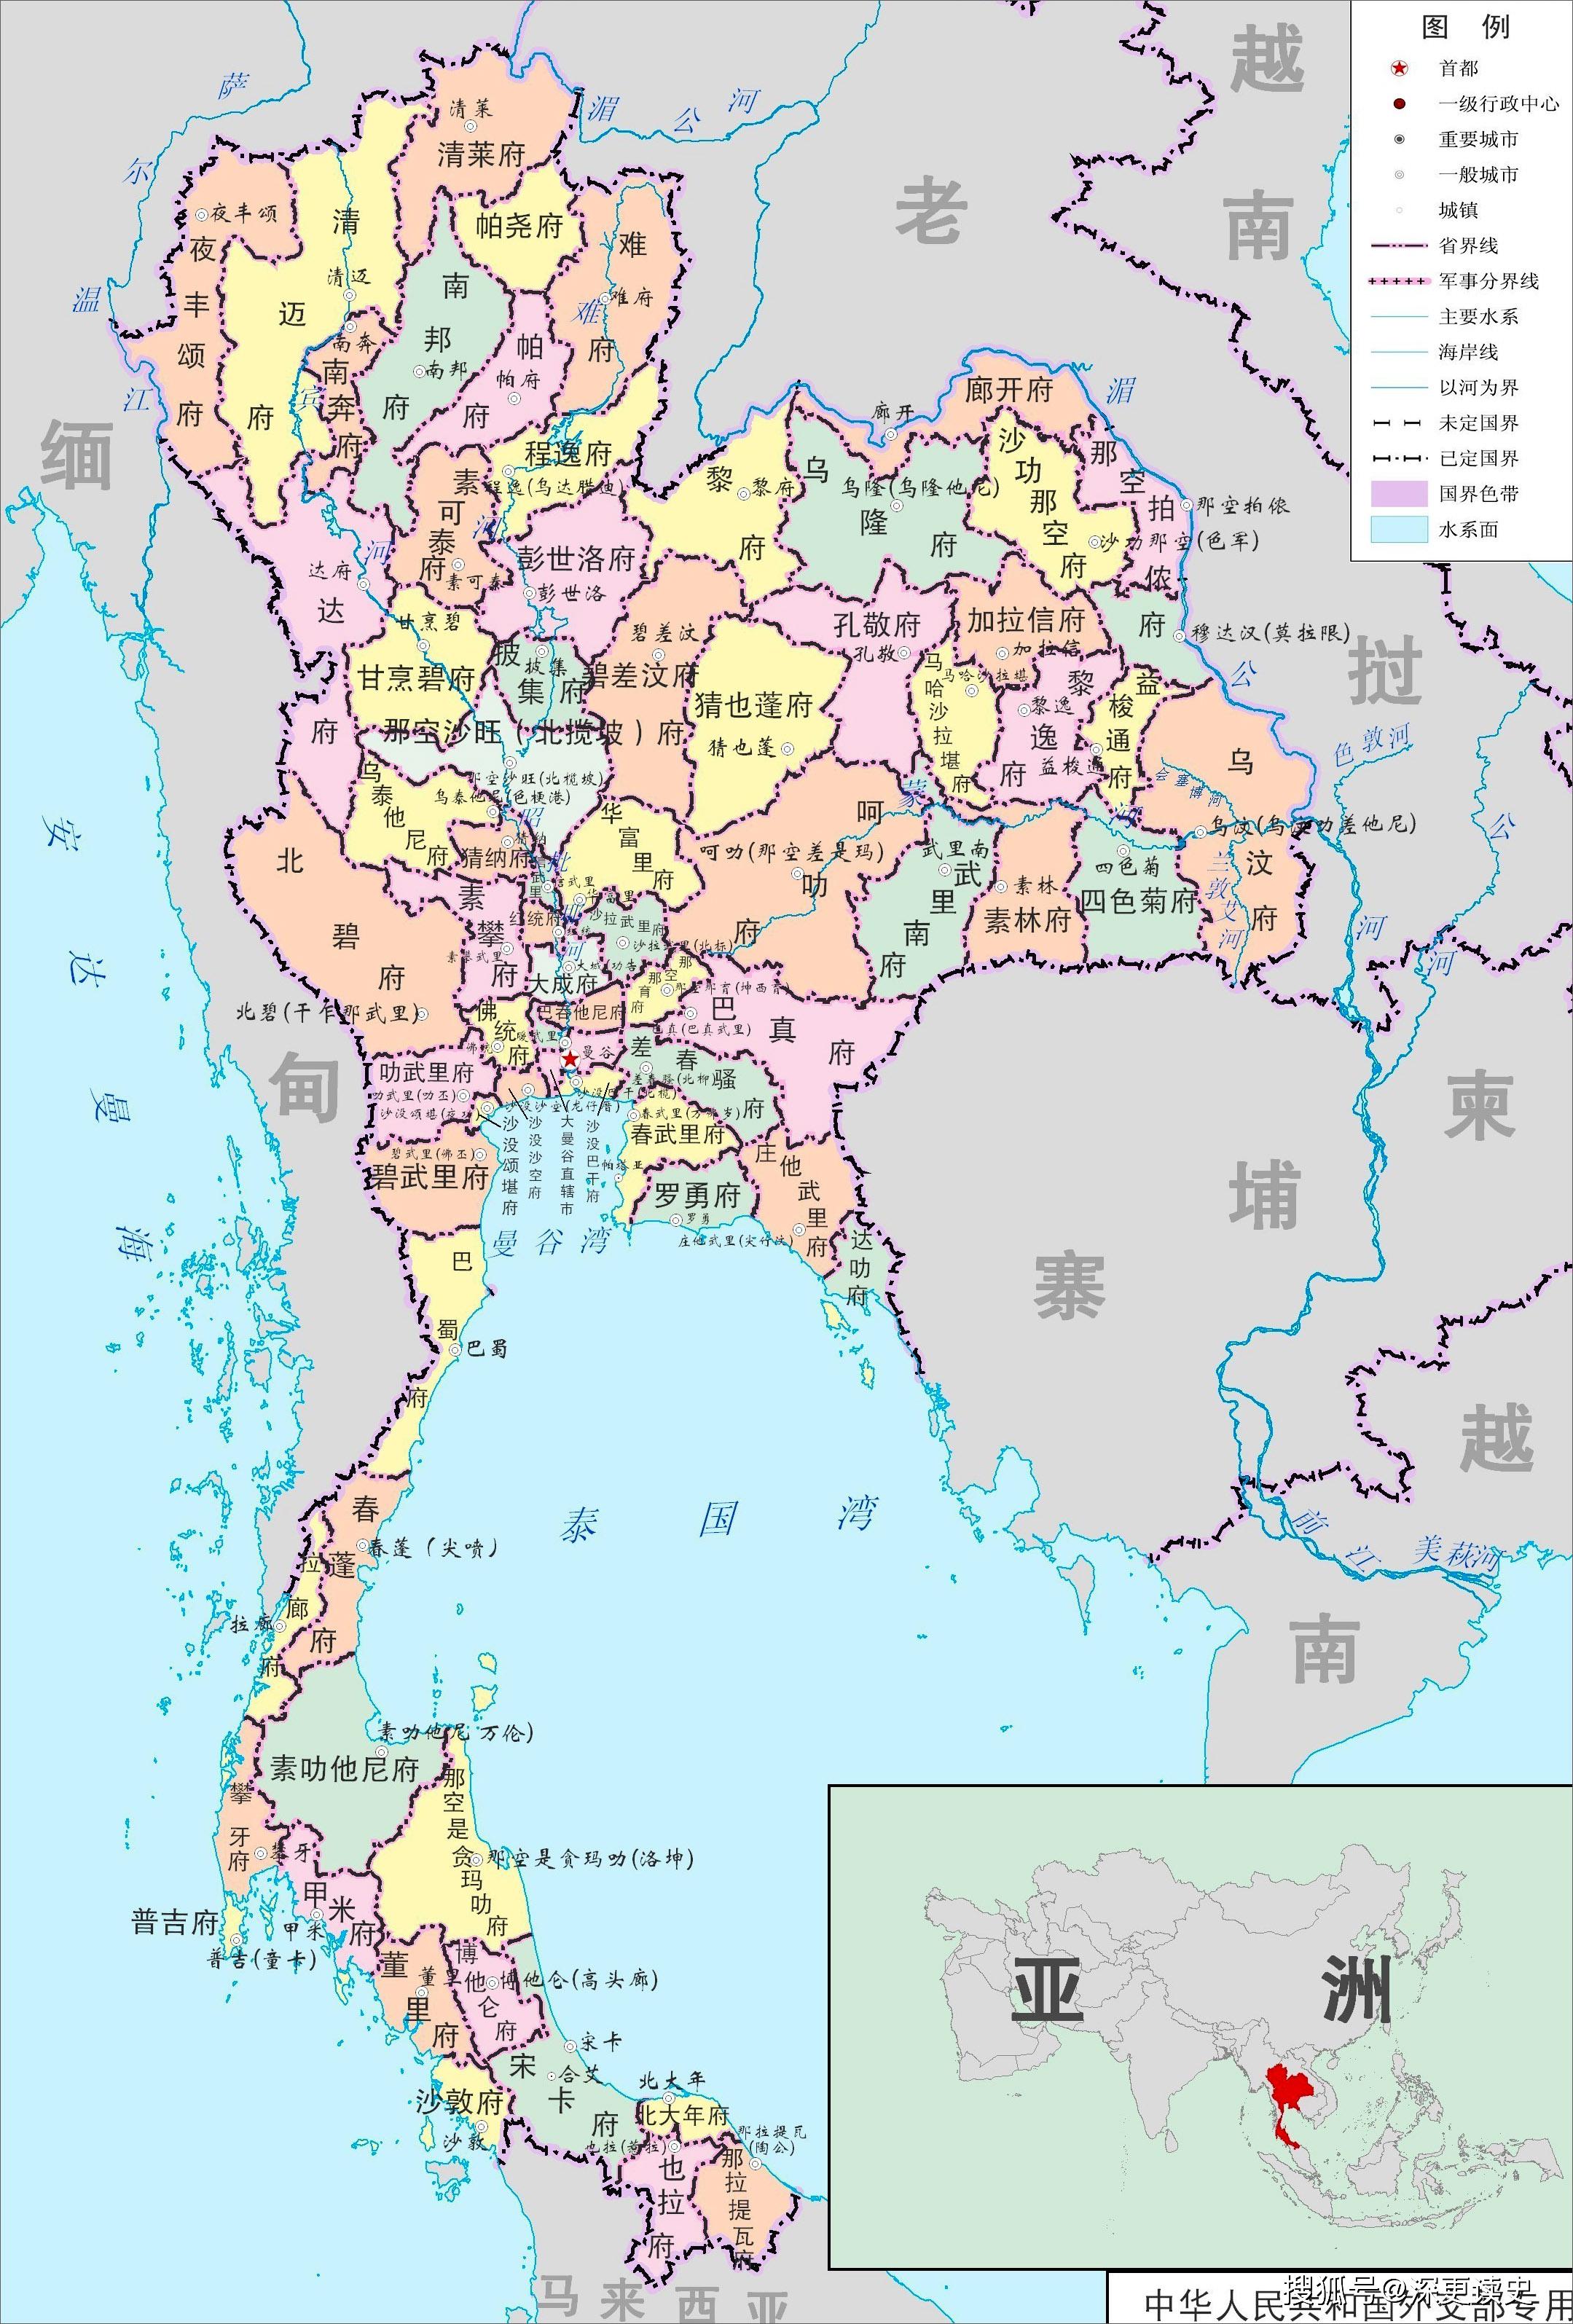 原创泰国实力不强地理位置也不优越为什么近代没有被殖民呢